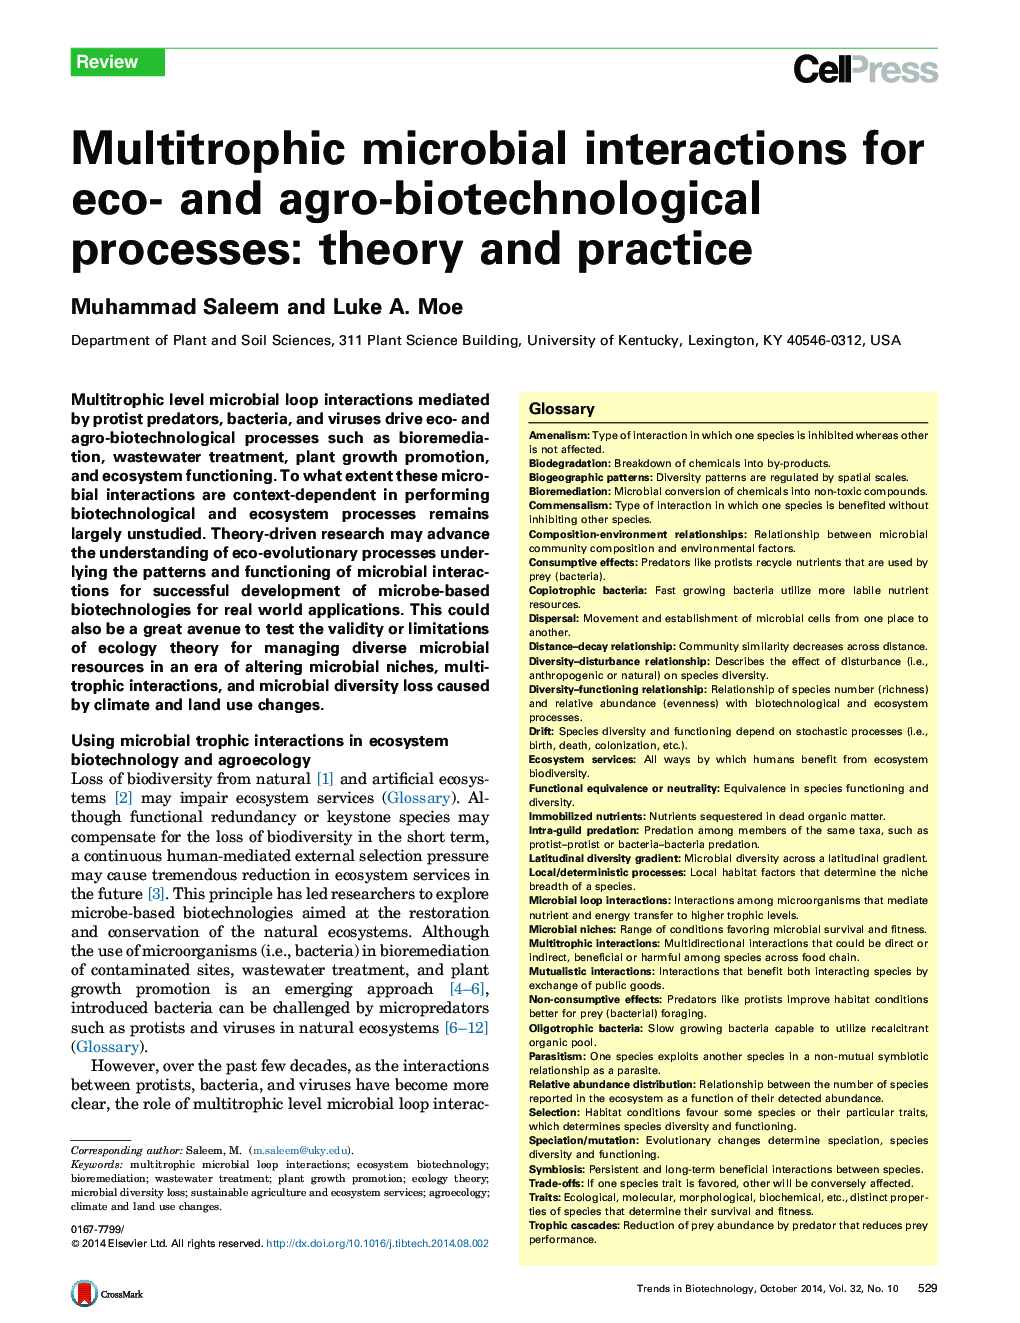 تداخل های چندتروفی میکروبی برای فرآیندهای زیست محیطی و زراعی - تئوری و عمل 